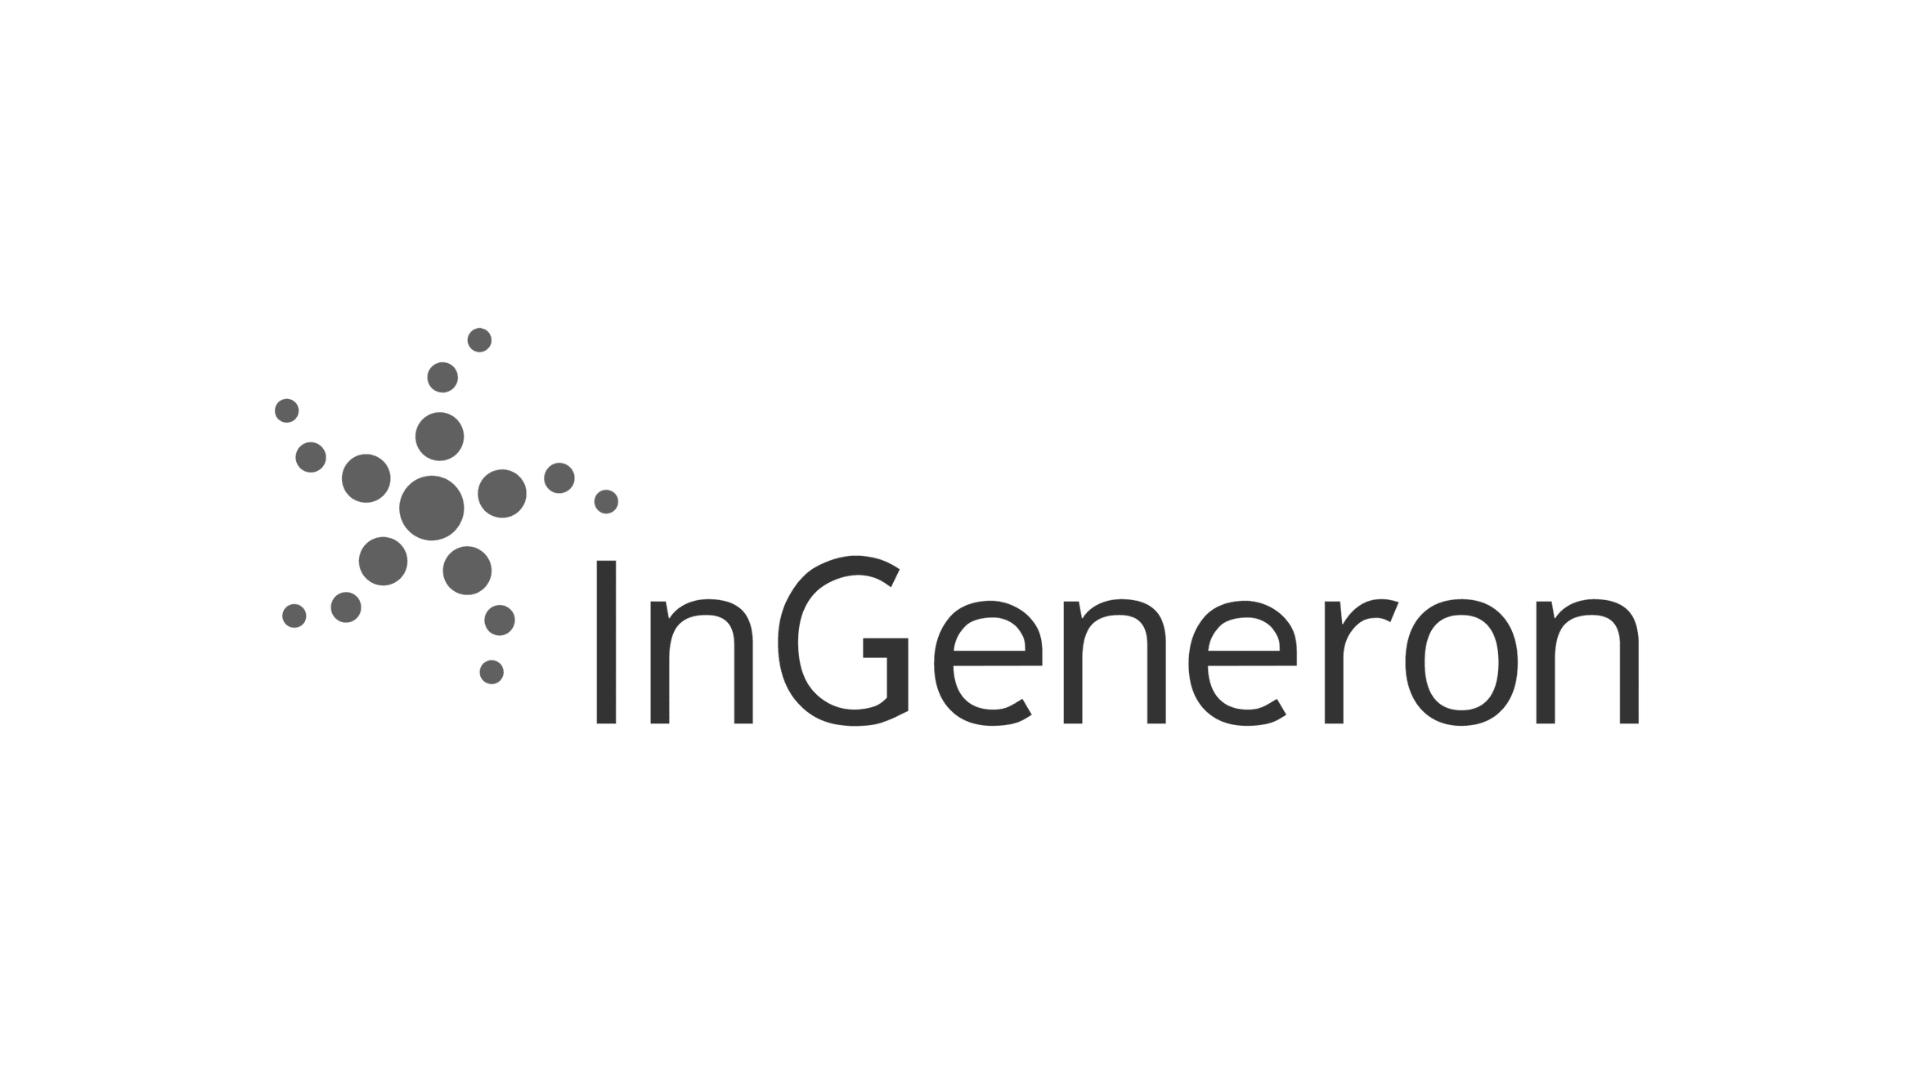 InGeneron startup